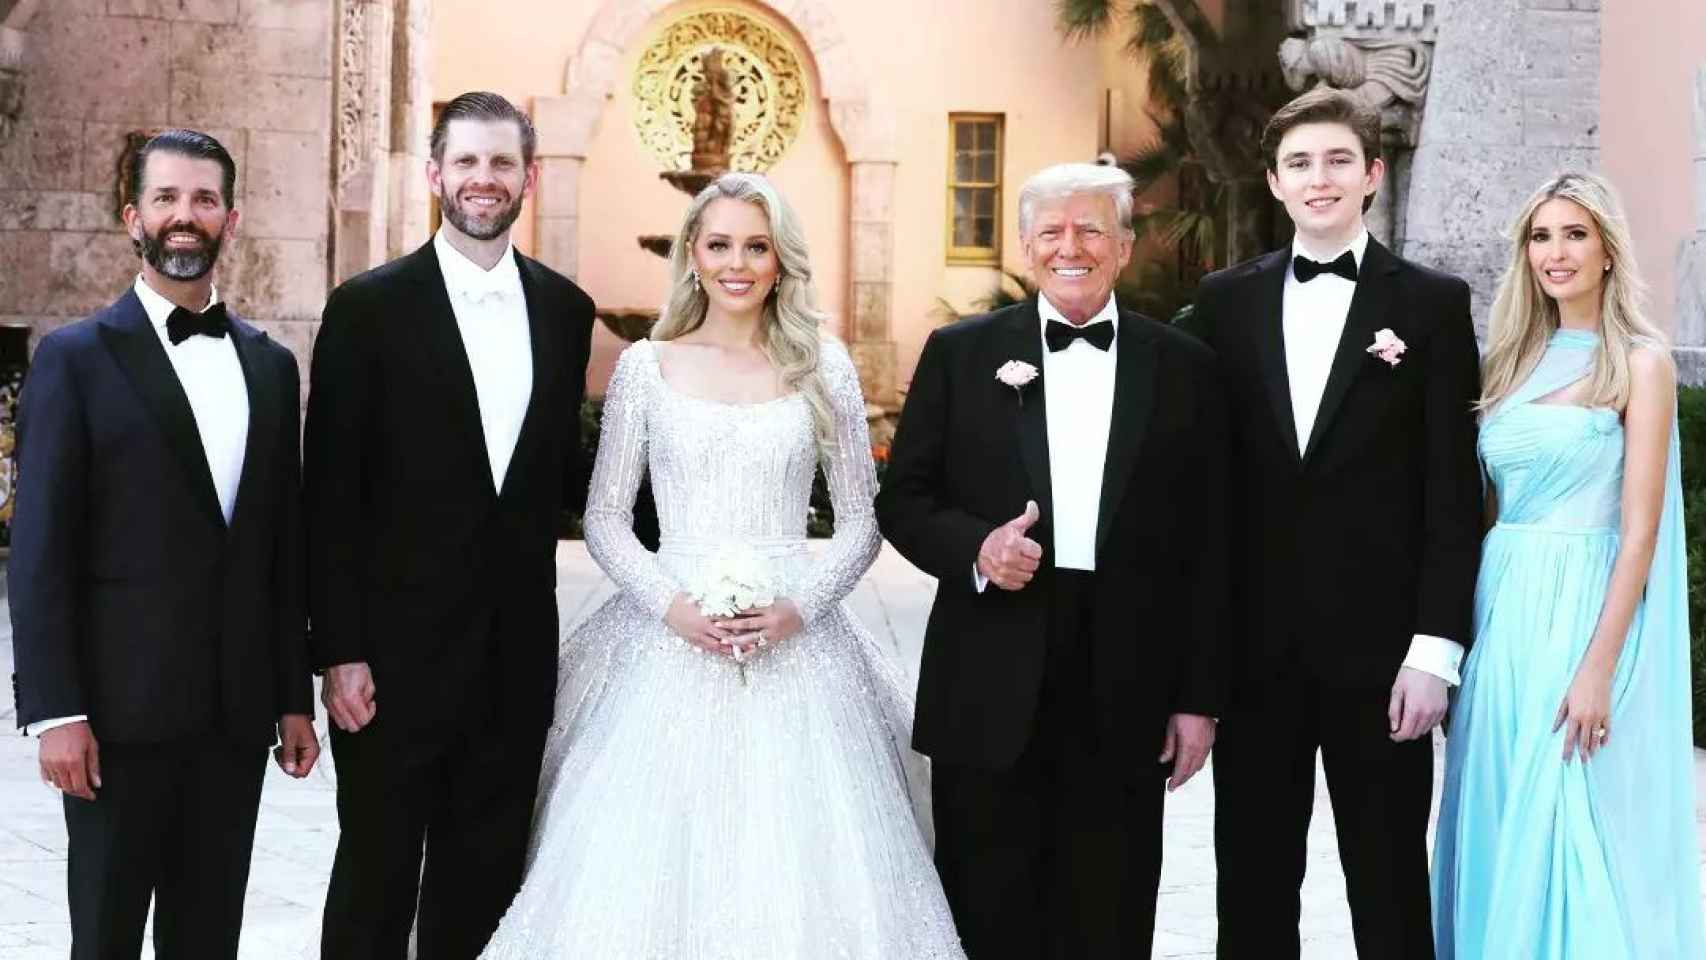 La boda de Tiffany Trump y Michael Boulos desde dentro: del orgulloso padrino al arco de cuajado de flores